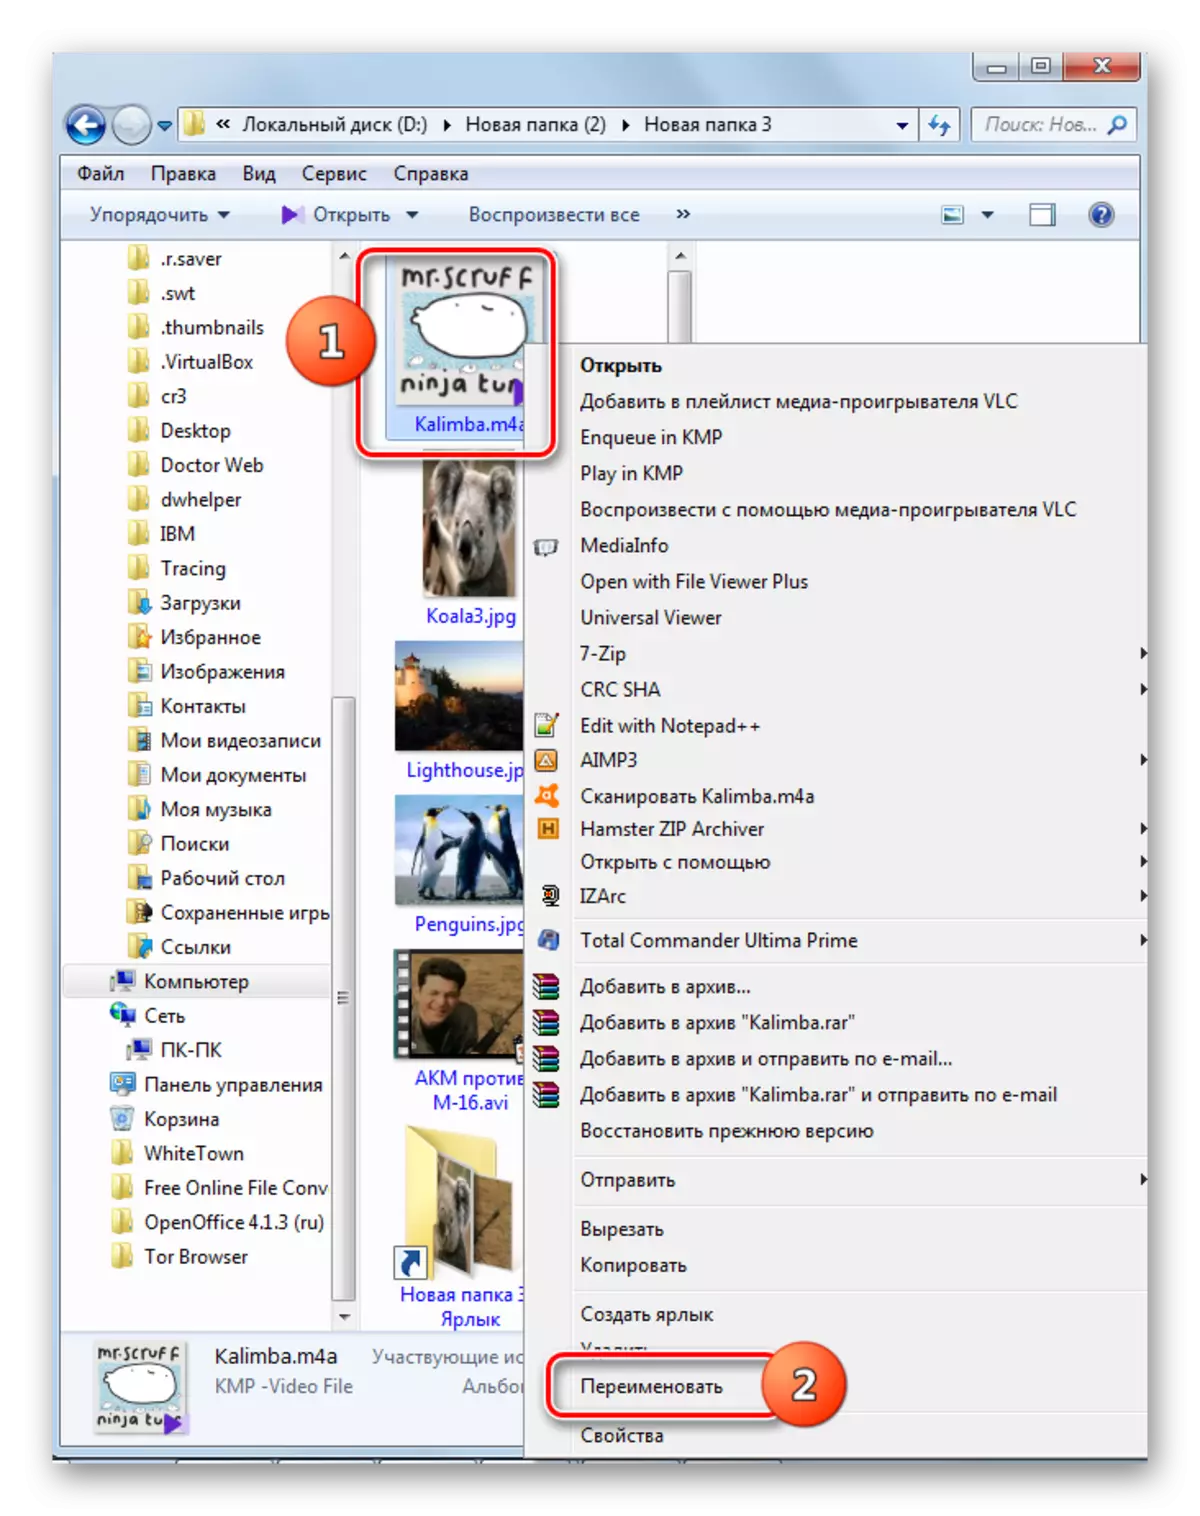 เปลี่ยนชื่อการขยายไฟล์ใน Windows Explorer ผ่านเมนูบริบท